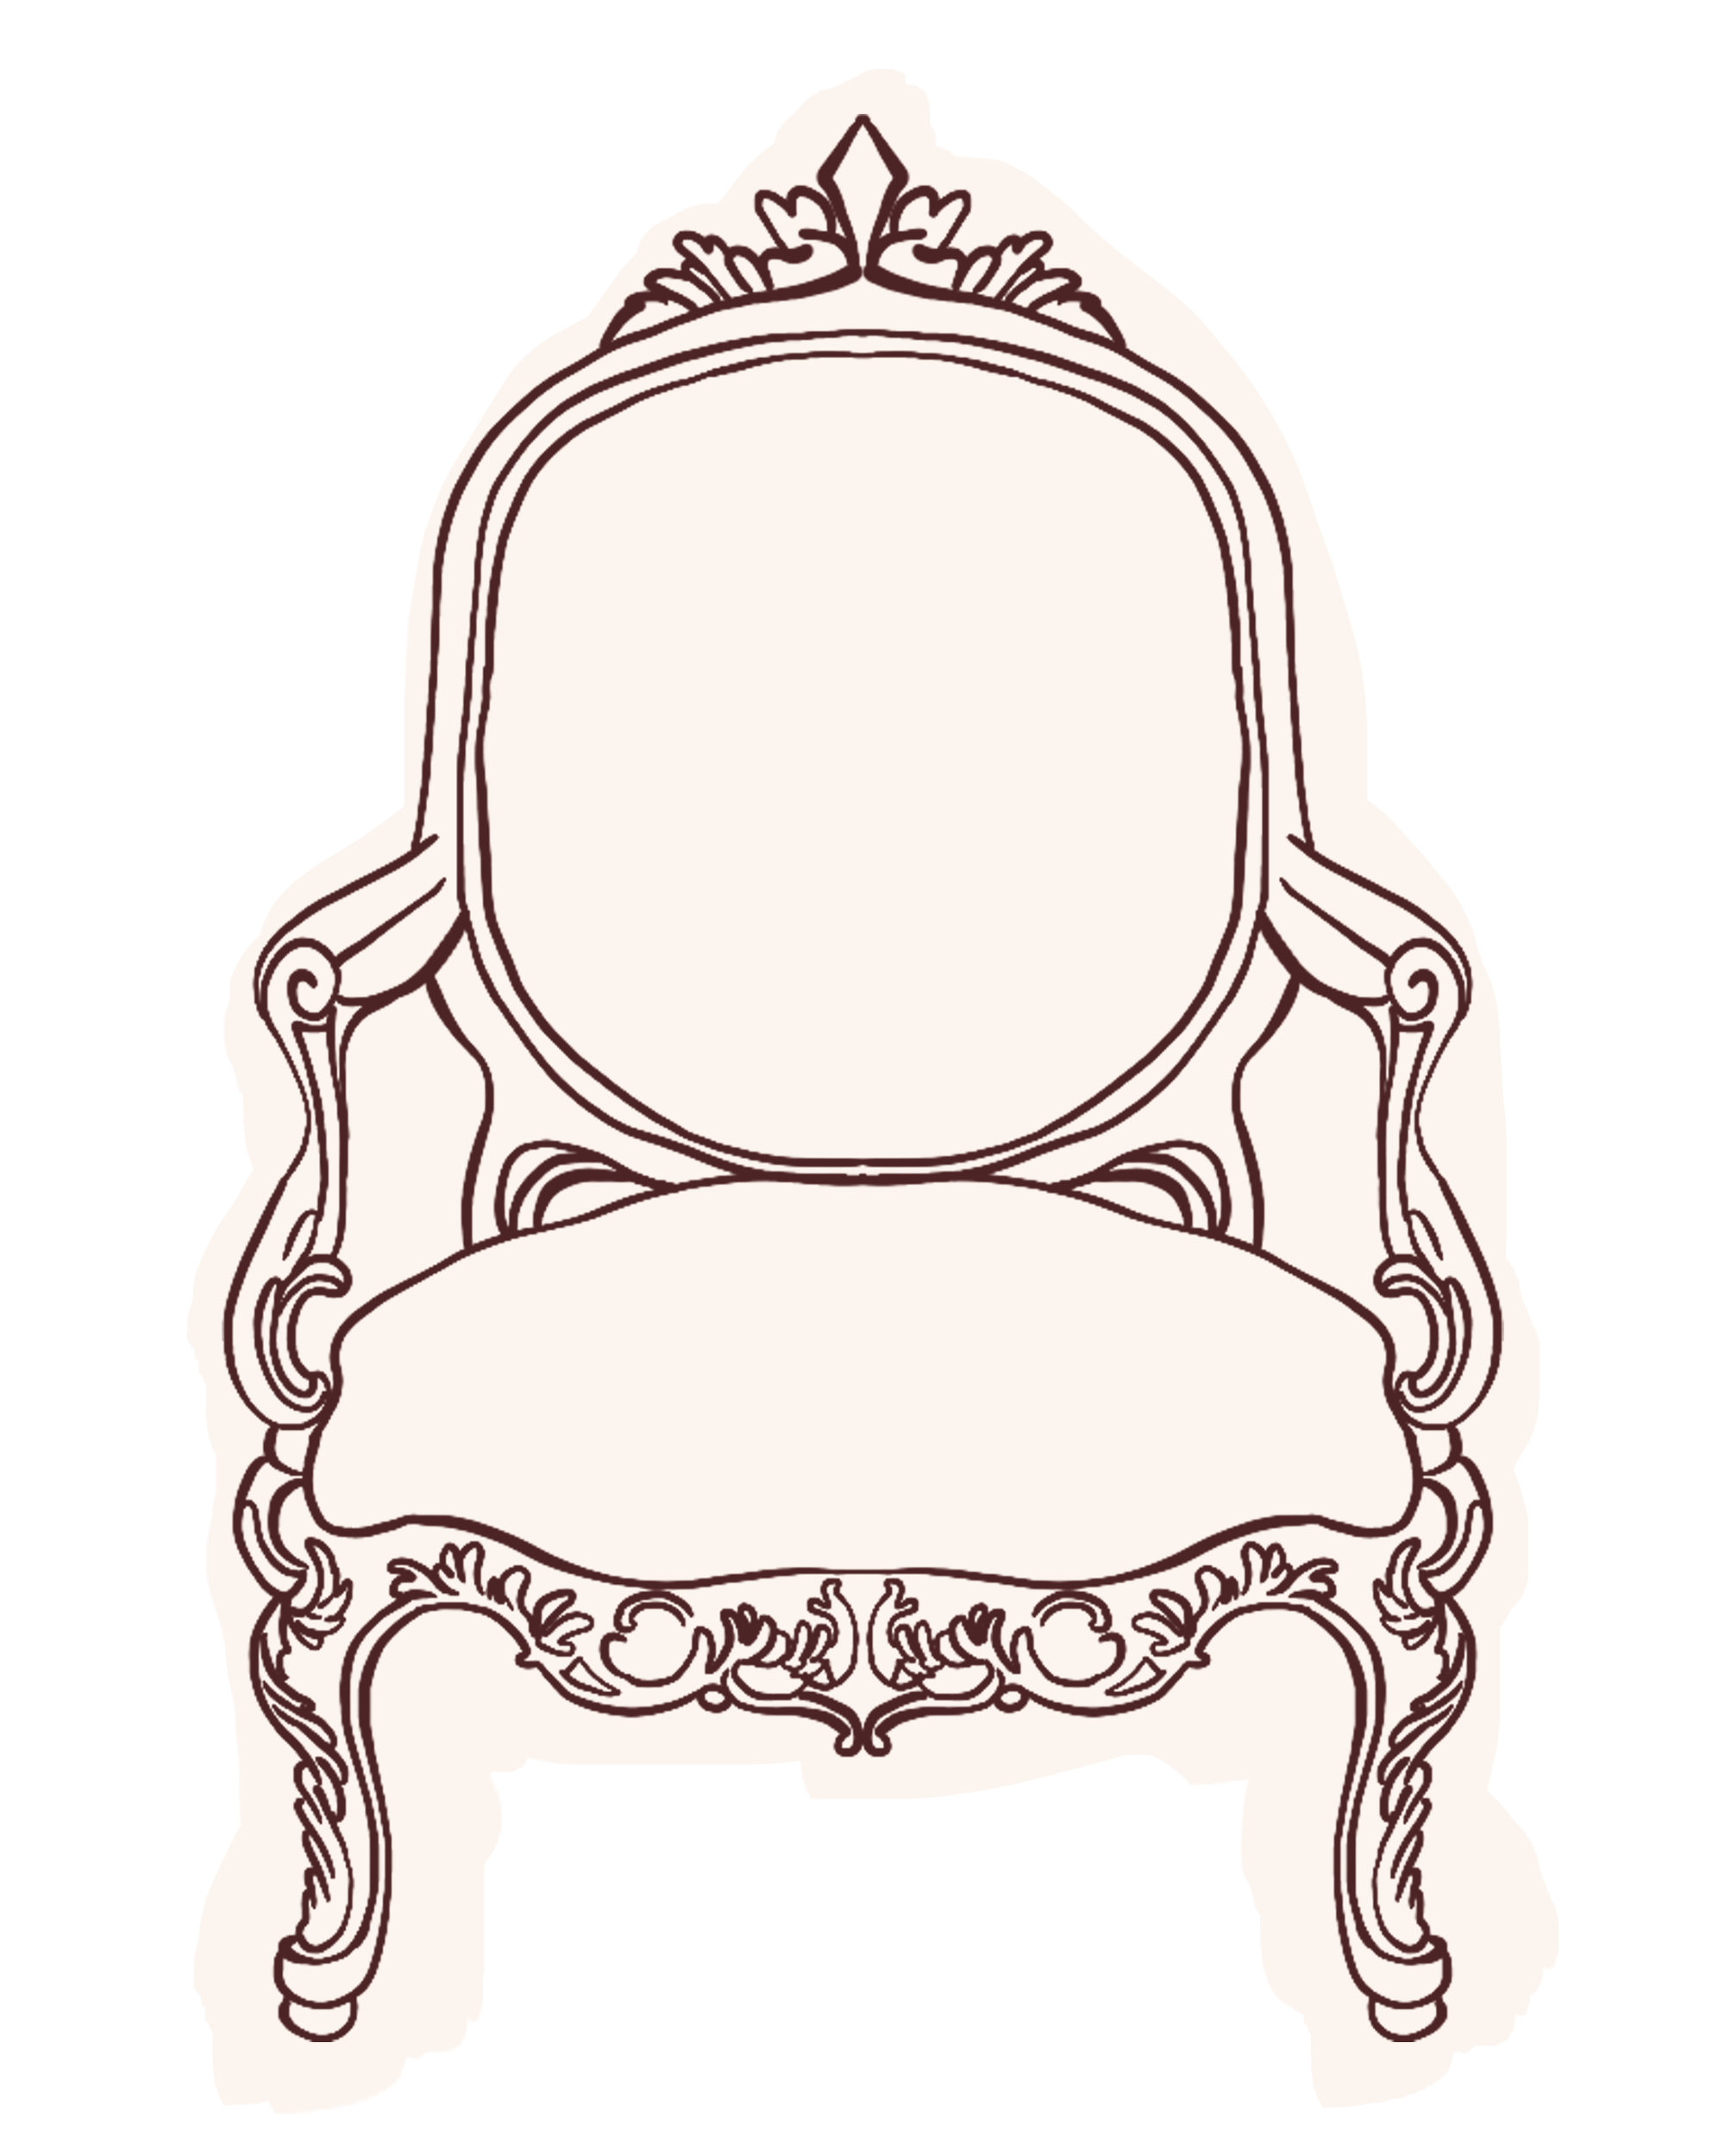 CSD-chair